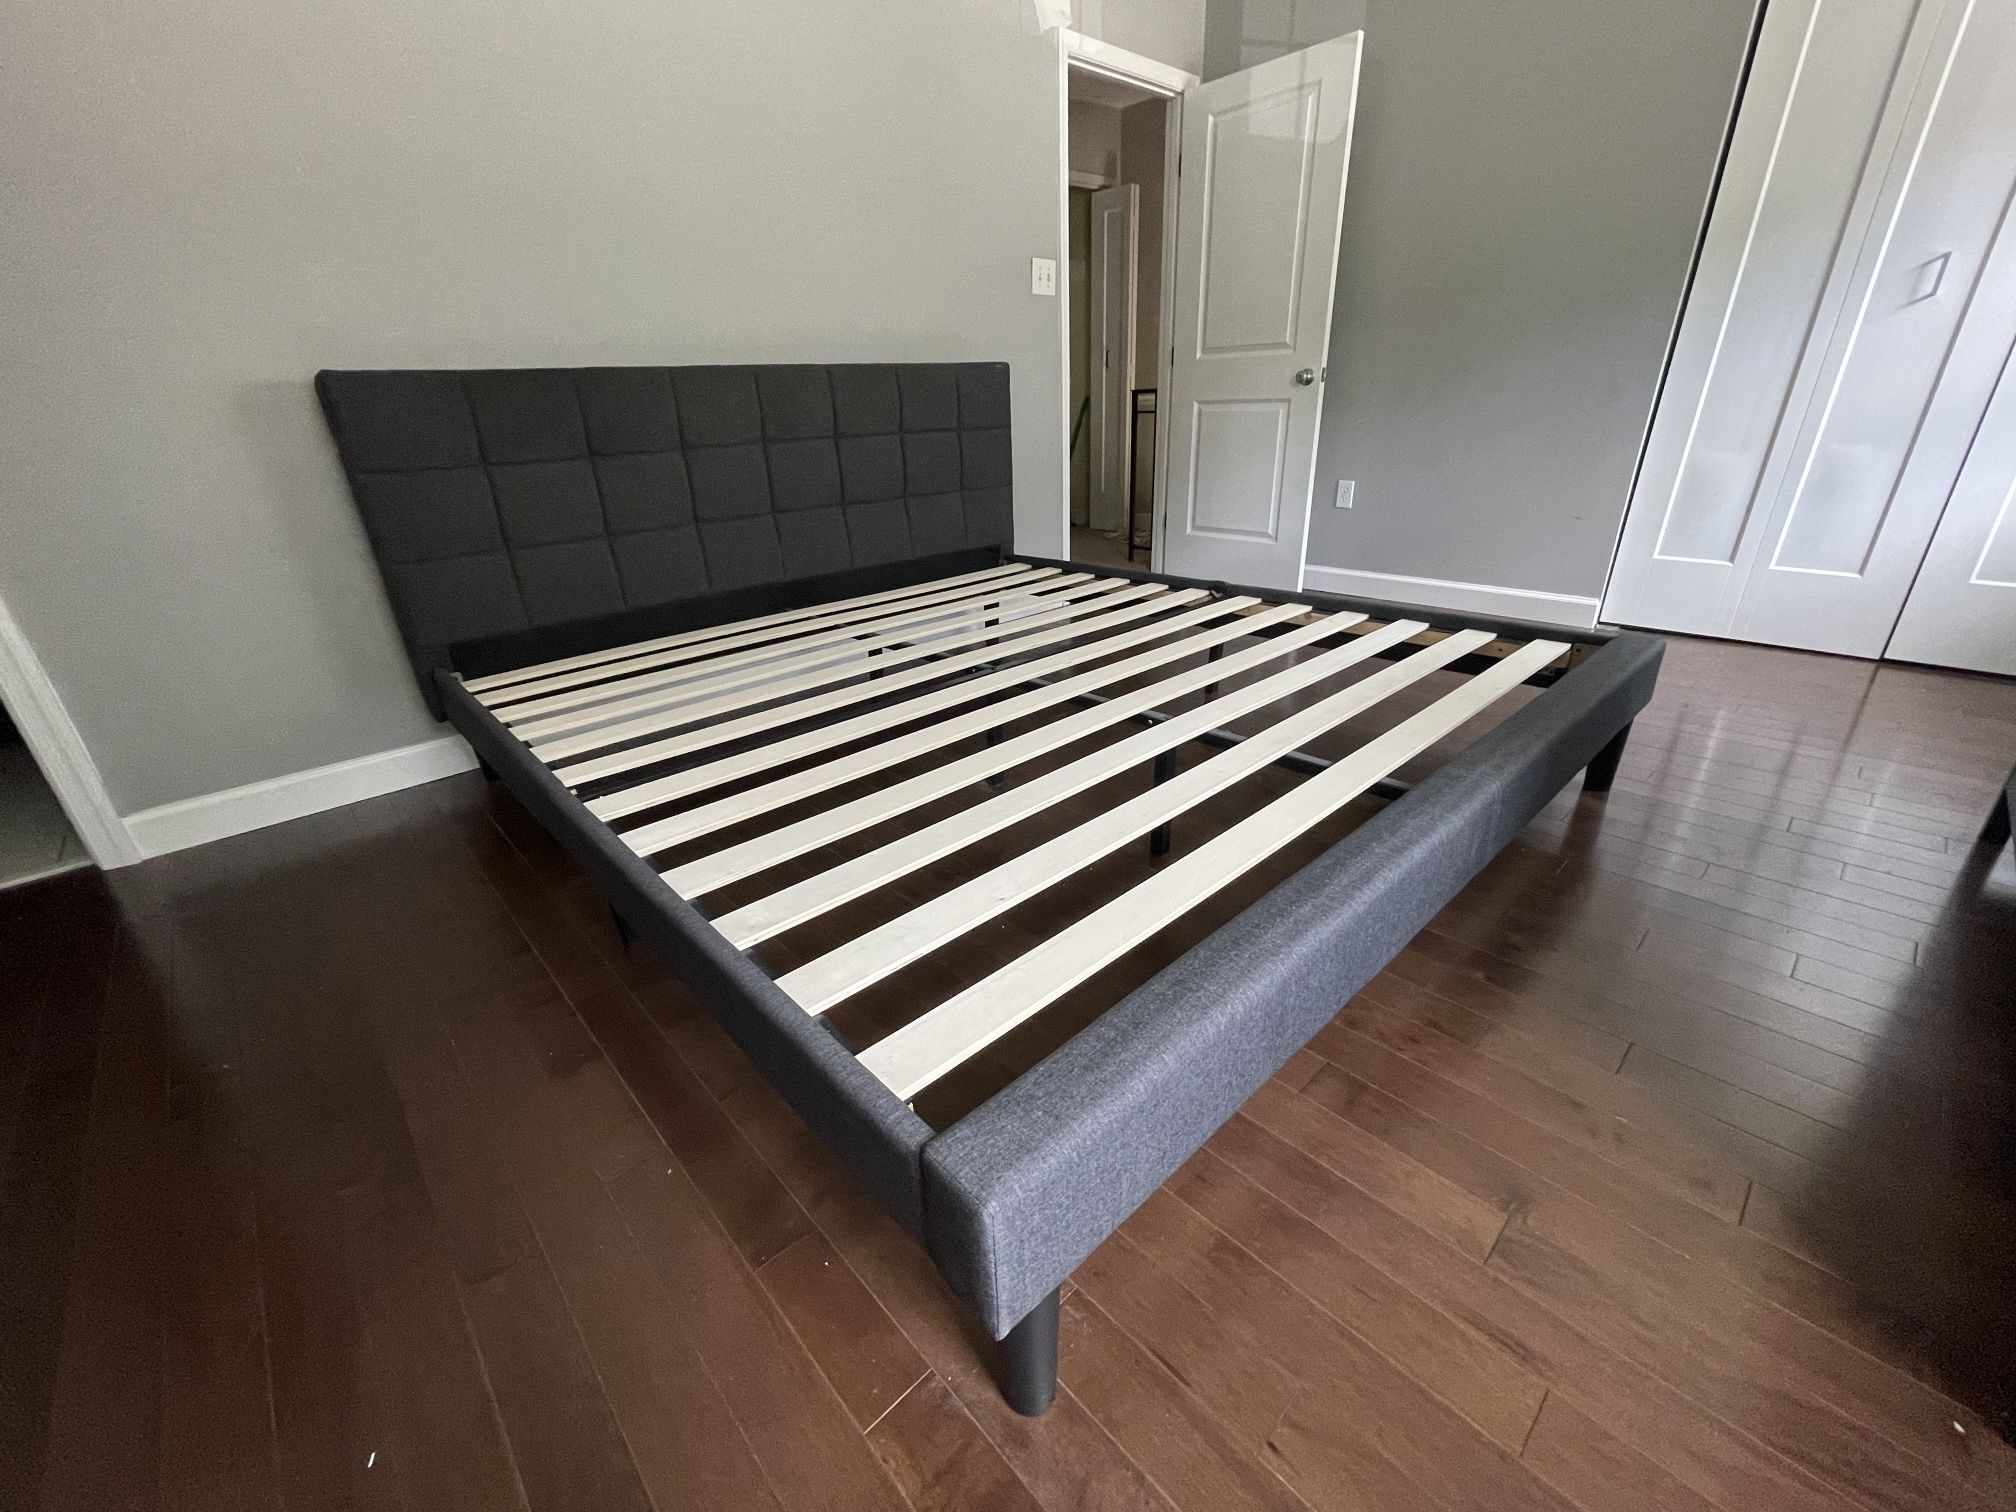 Zinus Lottie Platform Bed Frame - King Size